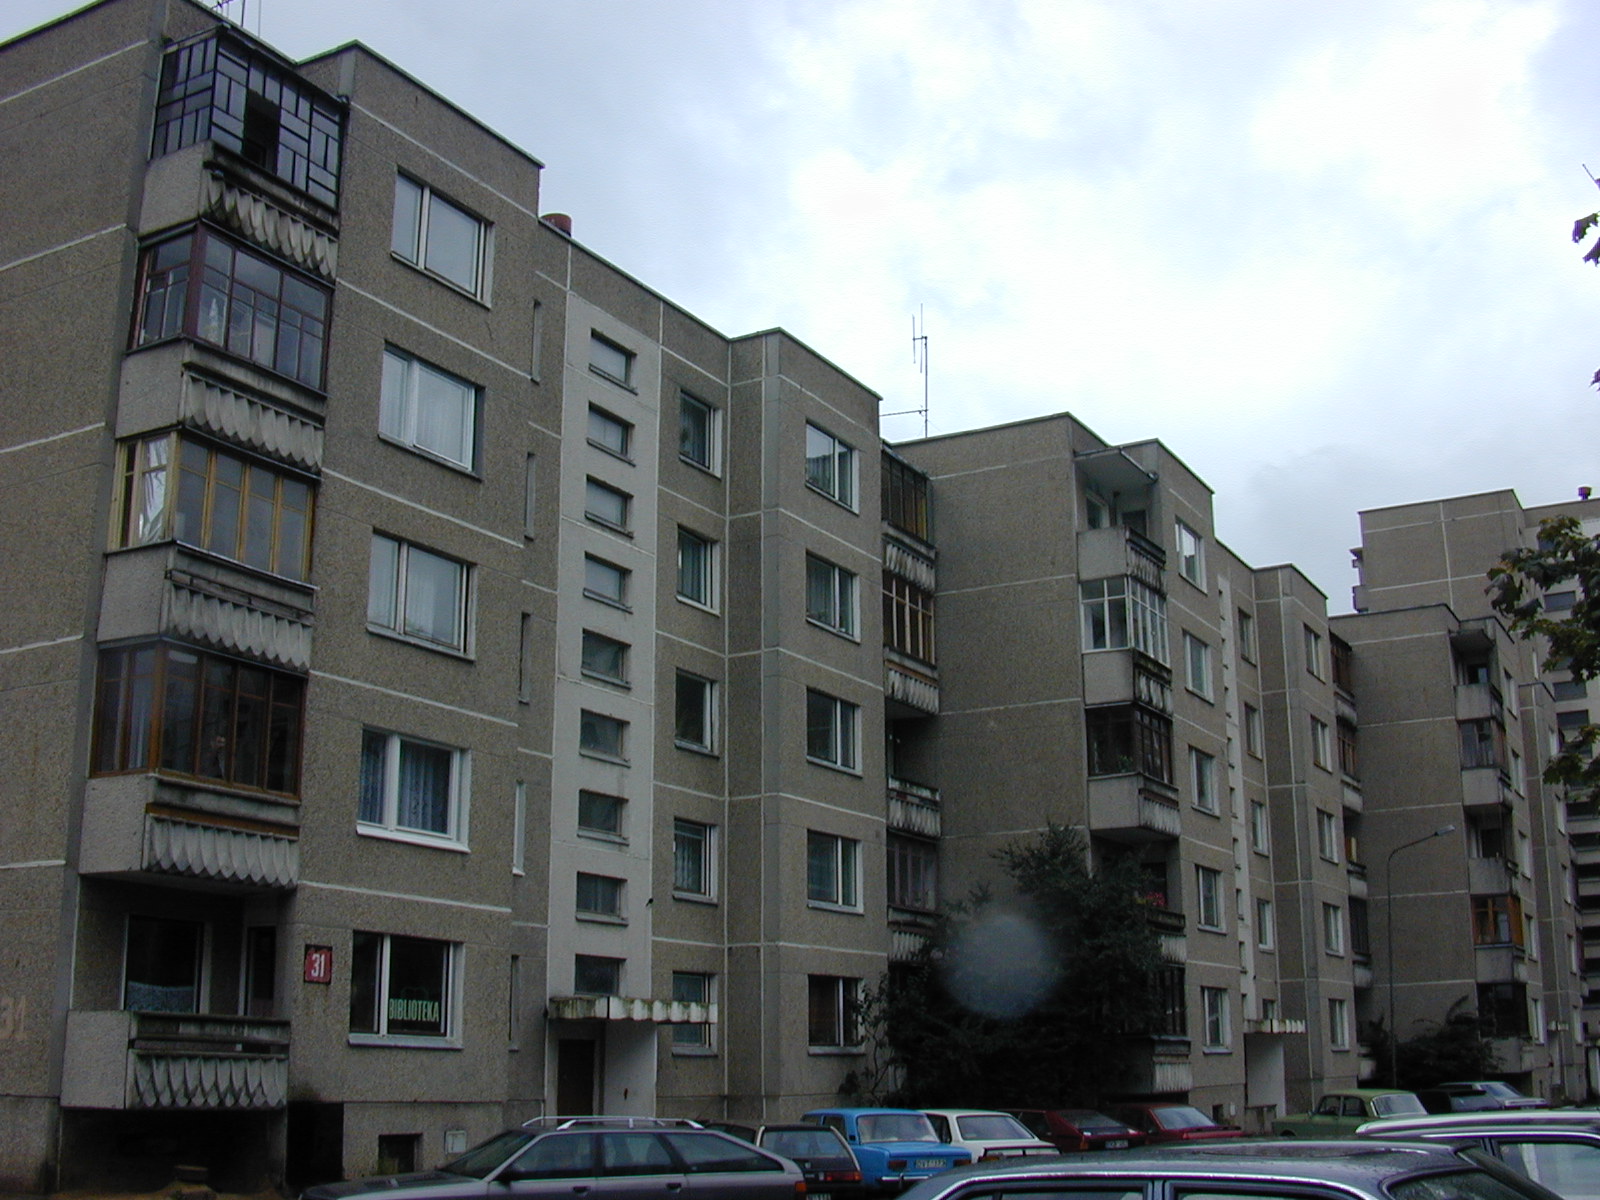 Rygos g. 31, Vilnius